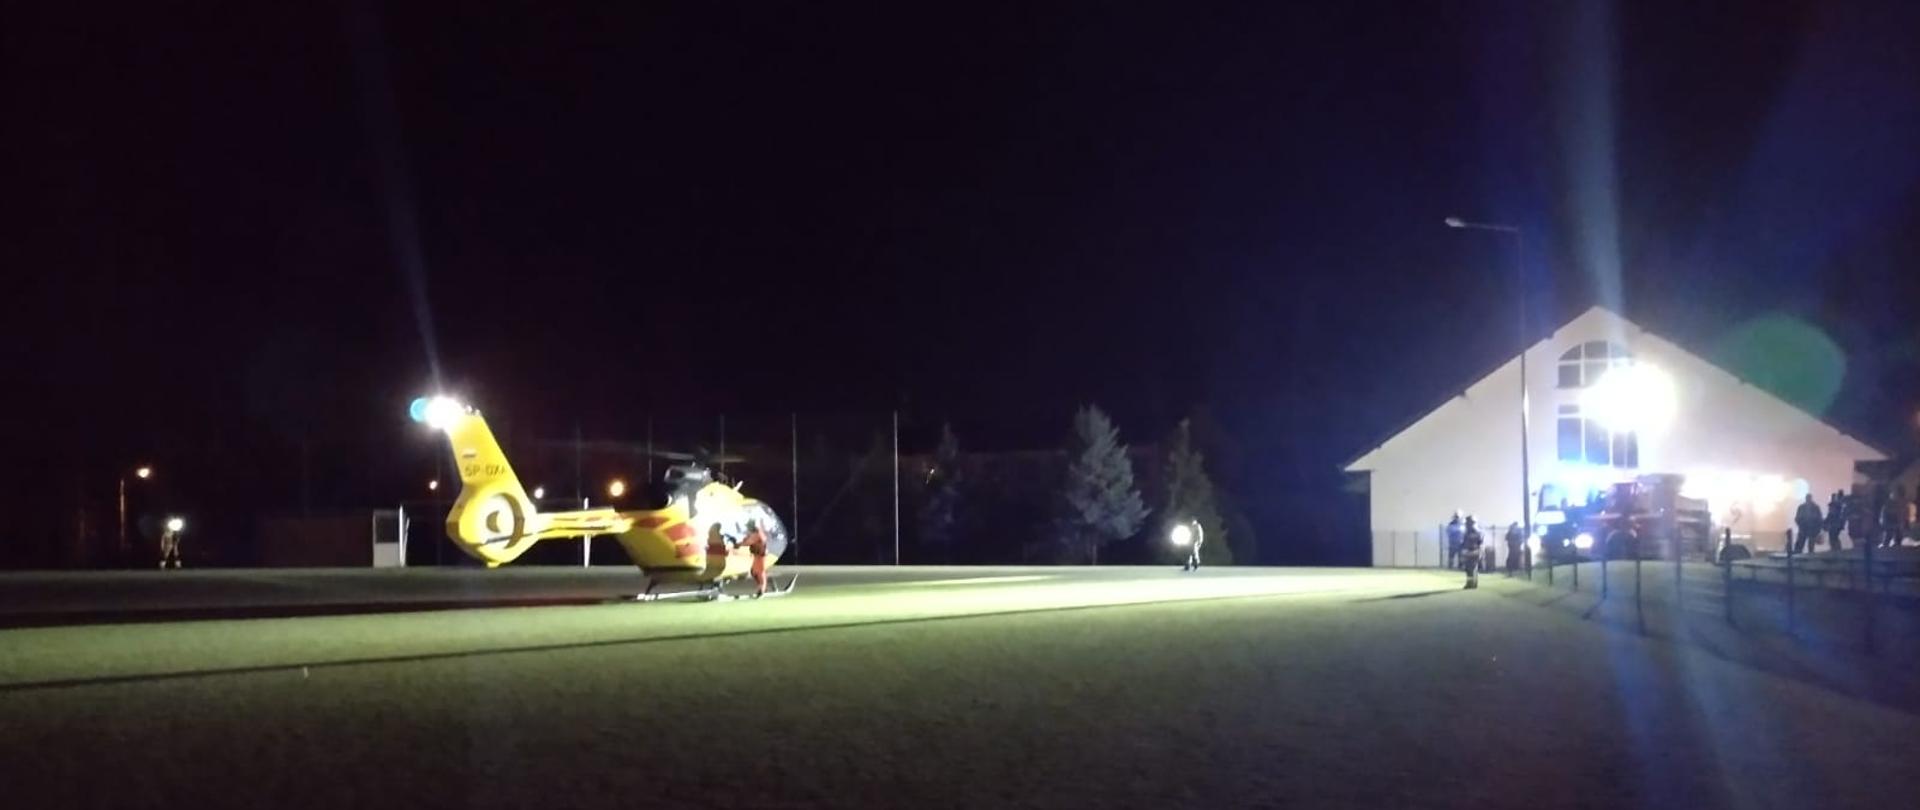 Na zdjęciu żółty śmigłowiec LPR. Ma włączone światło. Miejsce to boisko sportowe z zieloną trawą. Boisko ogrodzone siatką. Pora nocna. Po prawej samochody straży pożarnej z włączonymi światłami mijania.